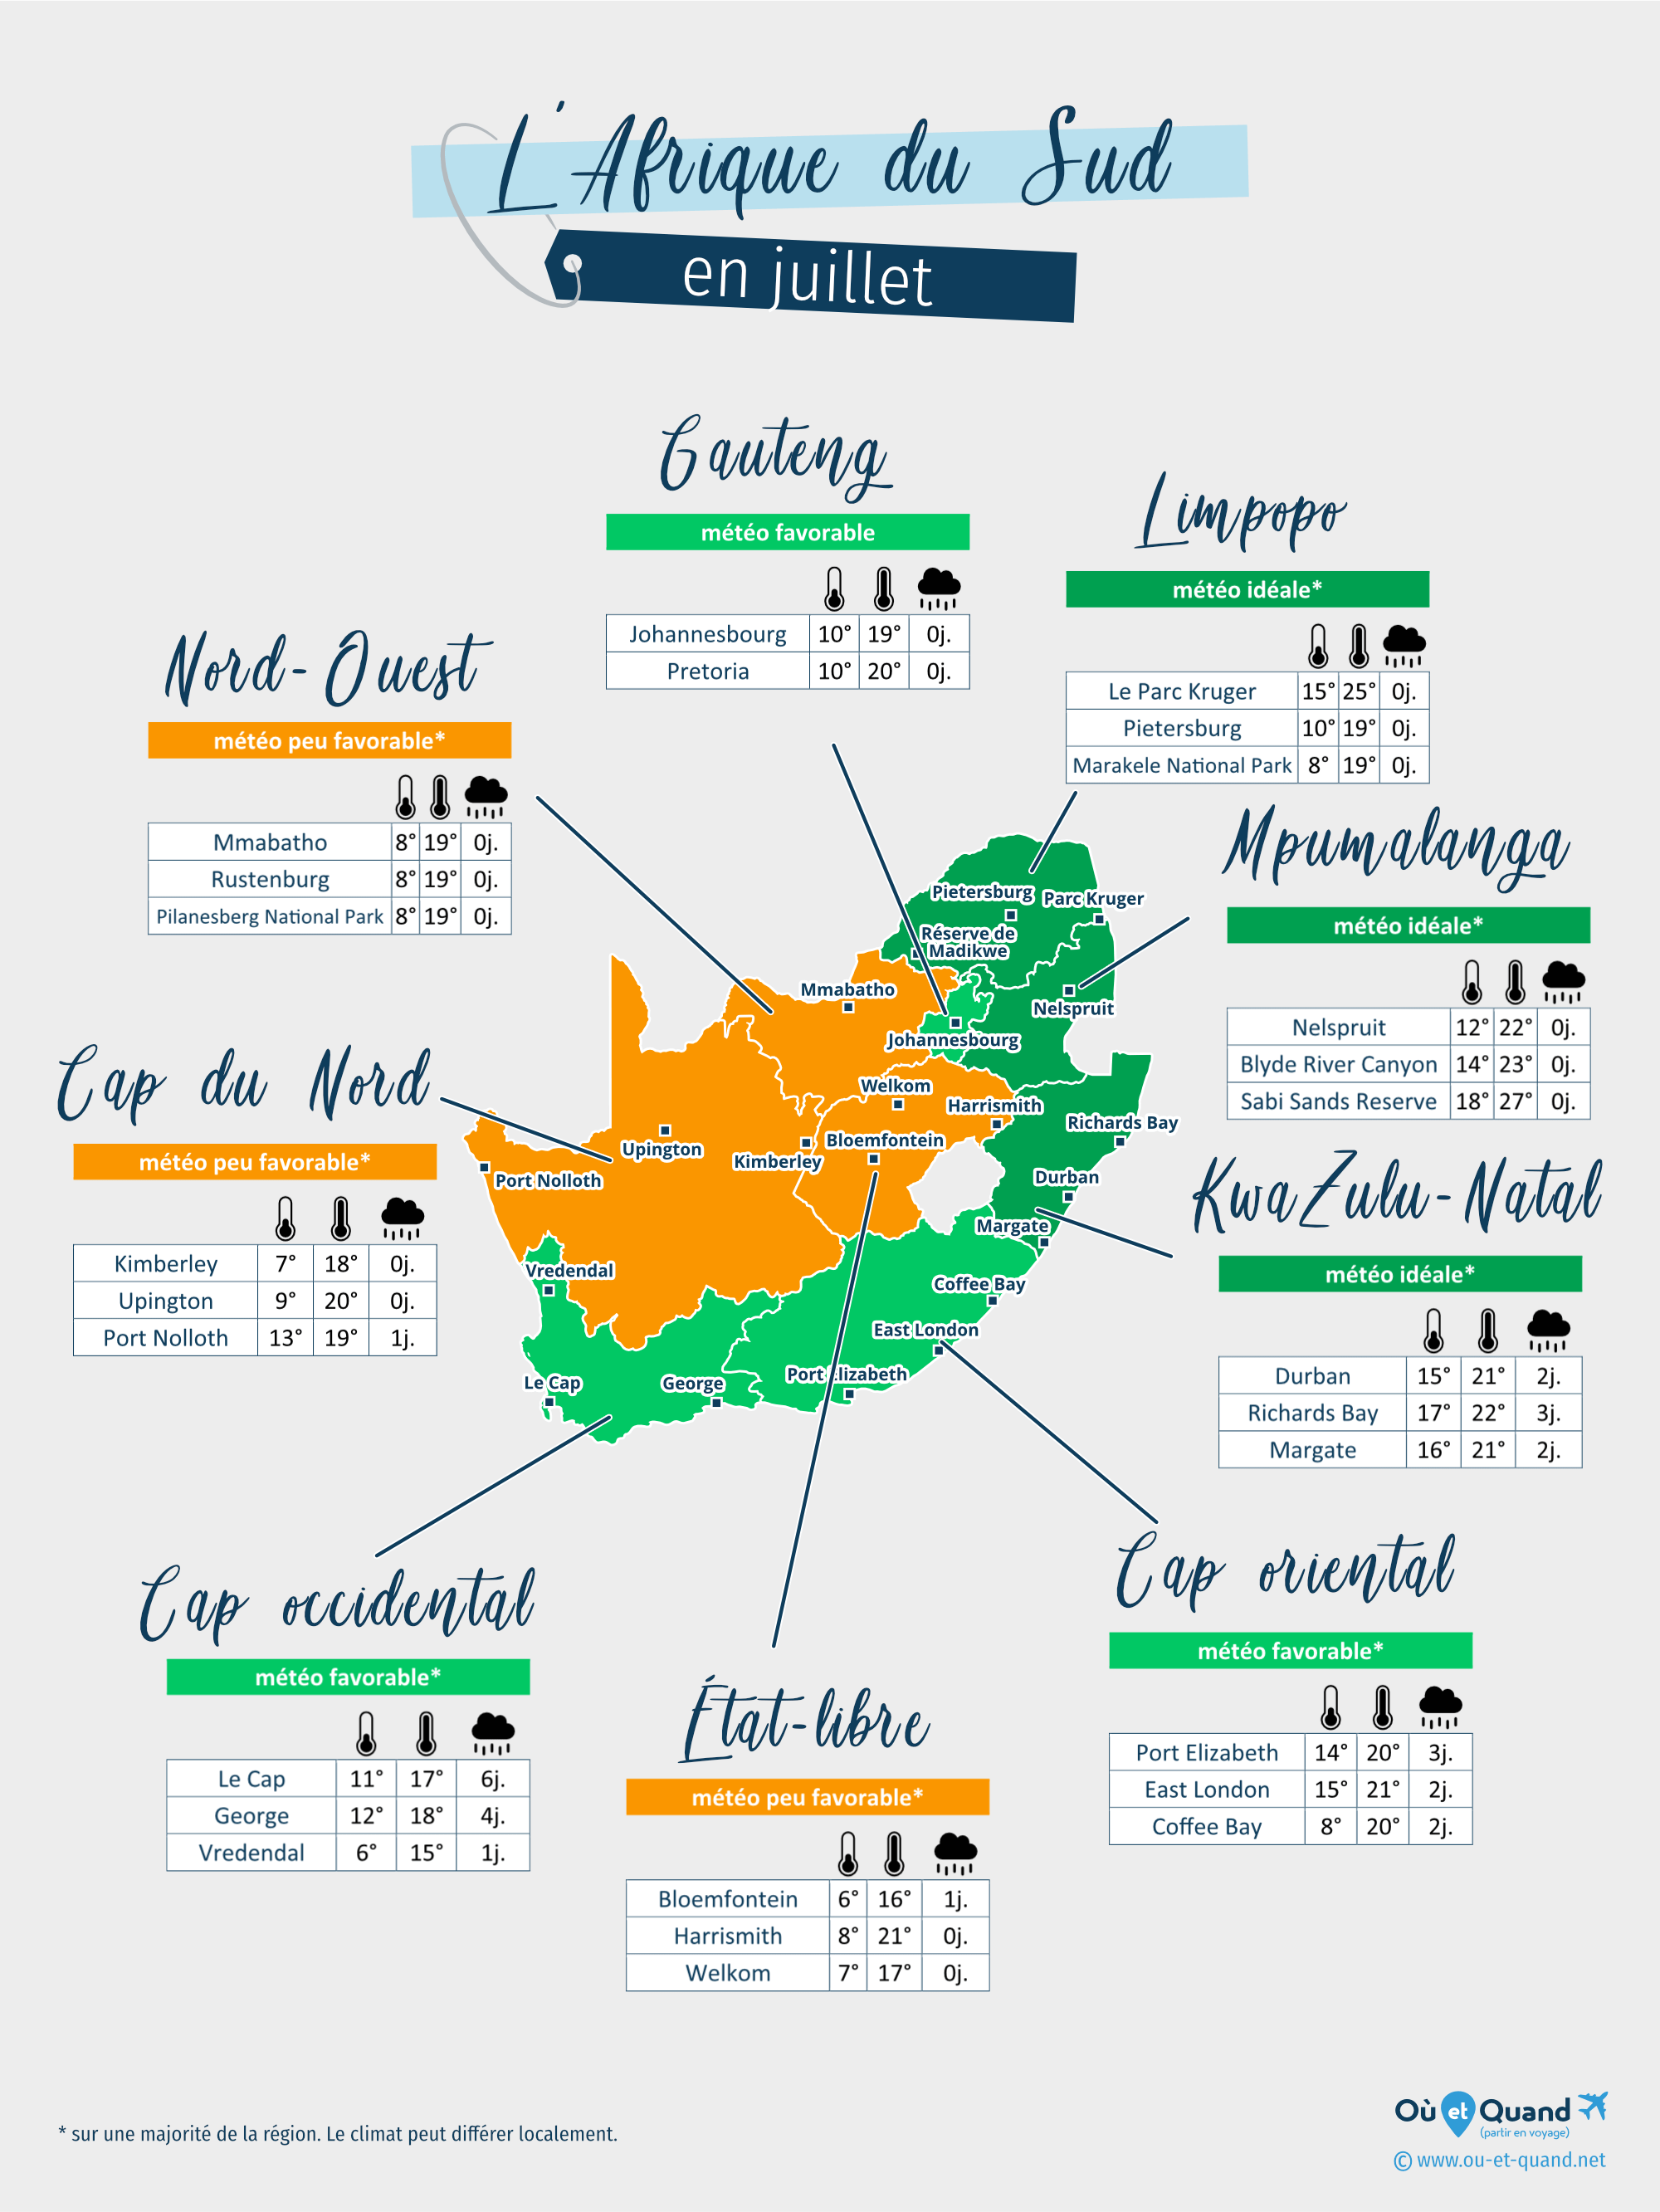 Carte de la météo en juillet dans les régions de l'Afrique du Sud